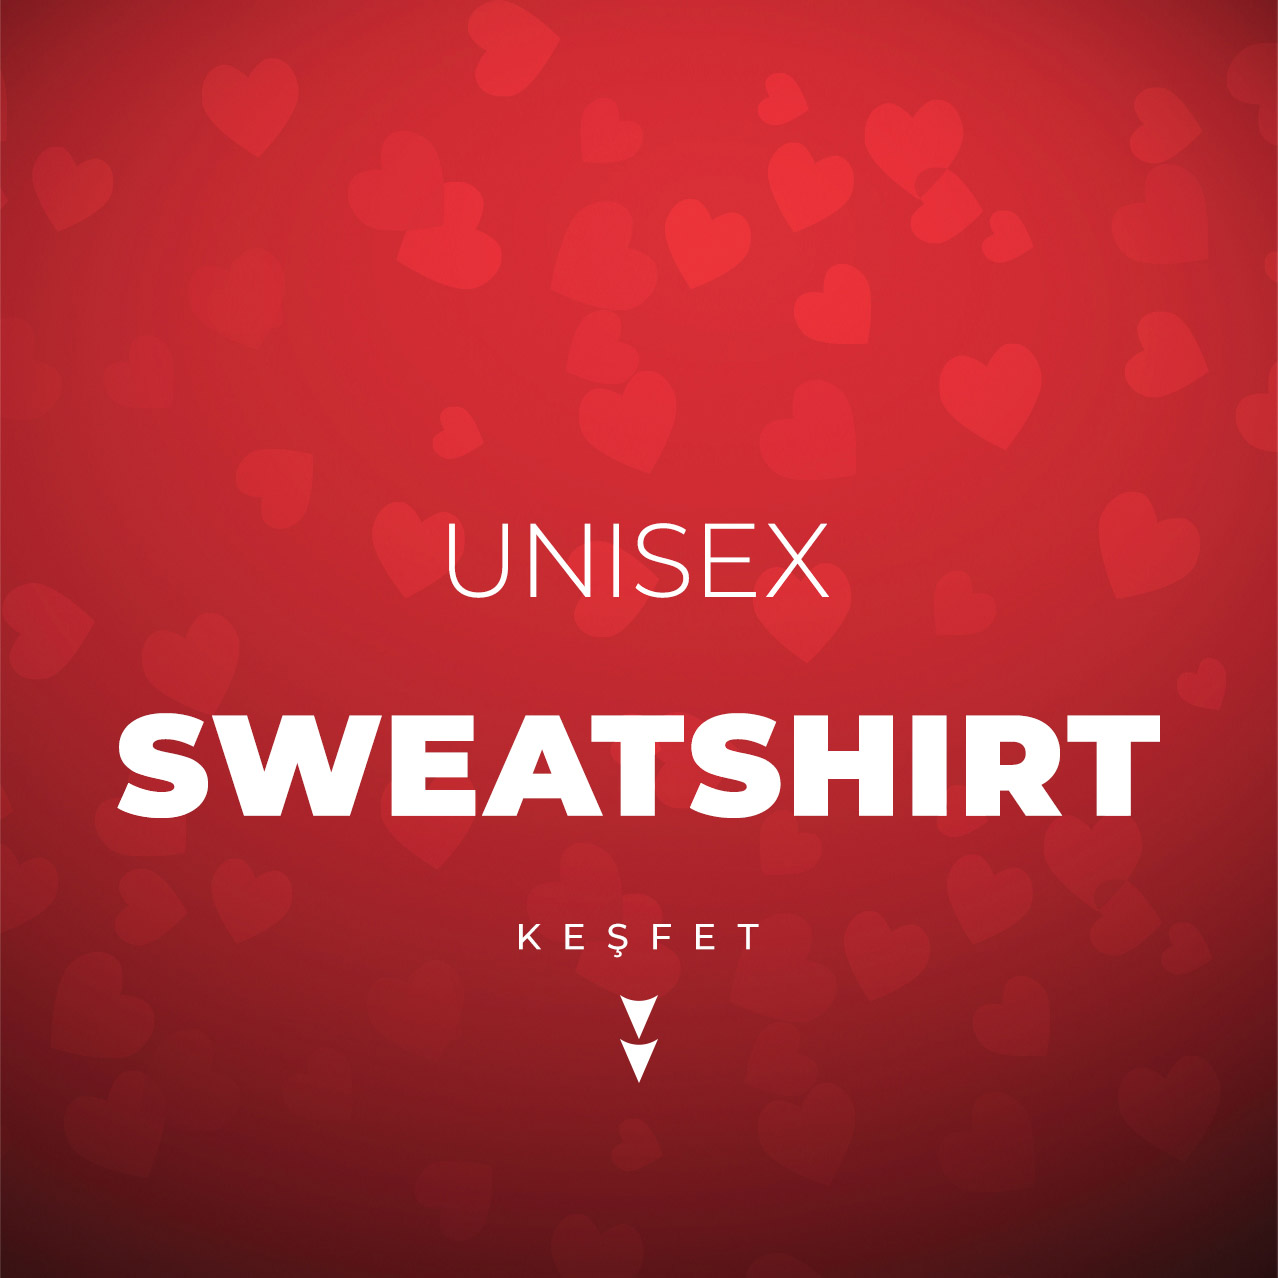 unisex sweatshirt 2.jpg (143 KB)